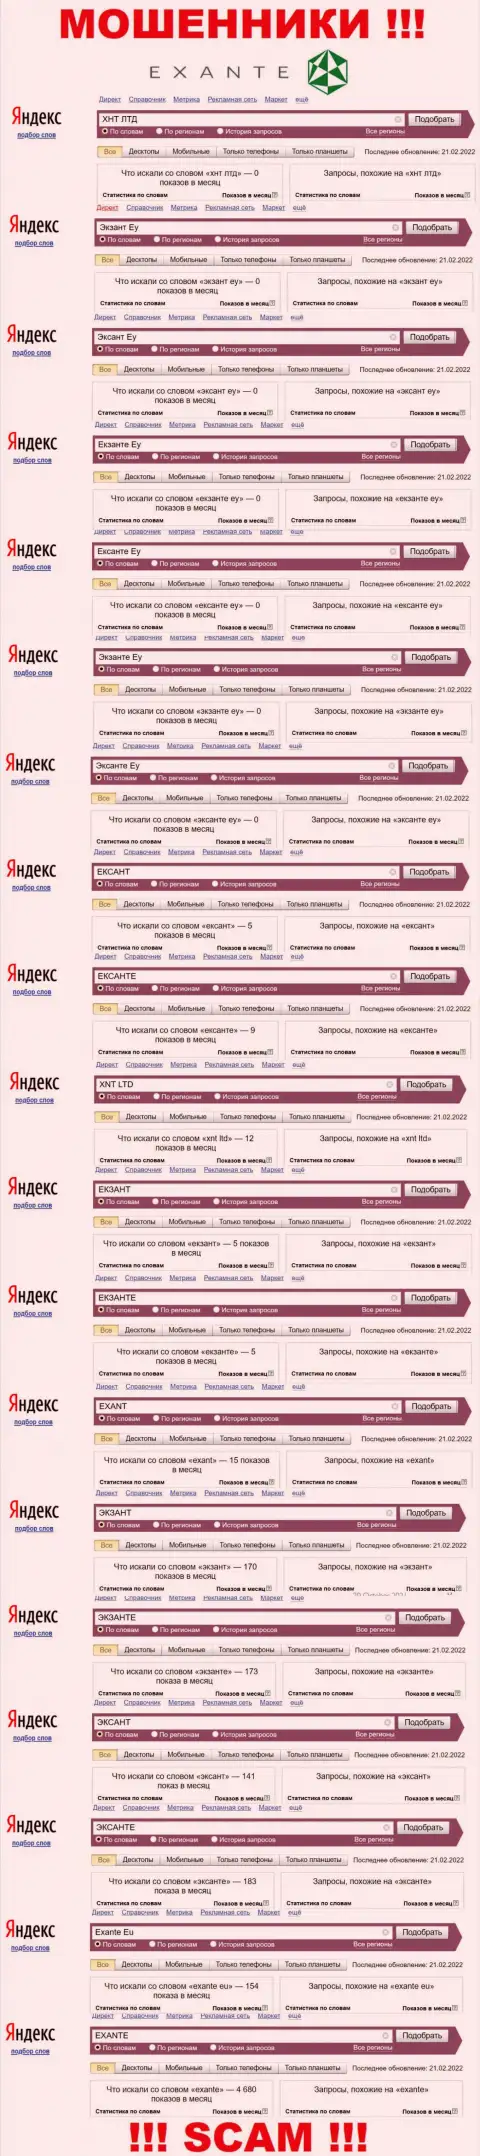 Число online запросов в поисковых системах по бренду мошенников ЭКЗАНТ